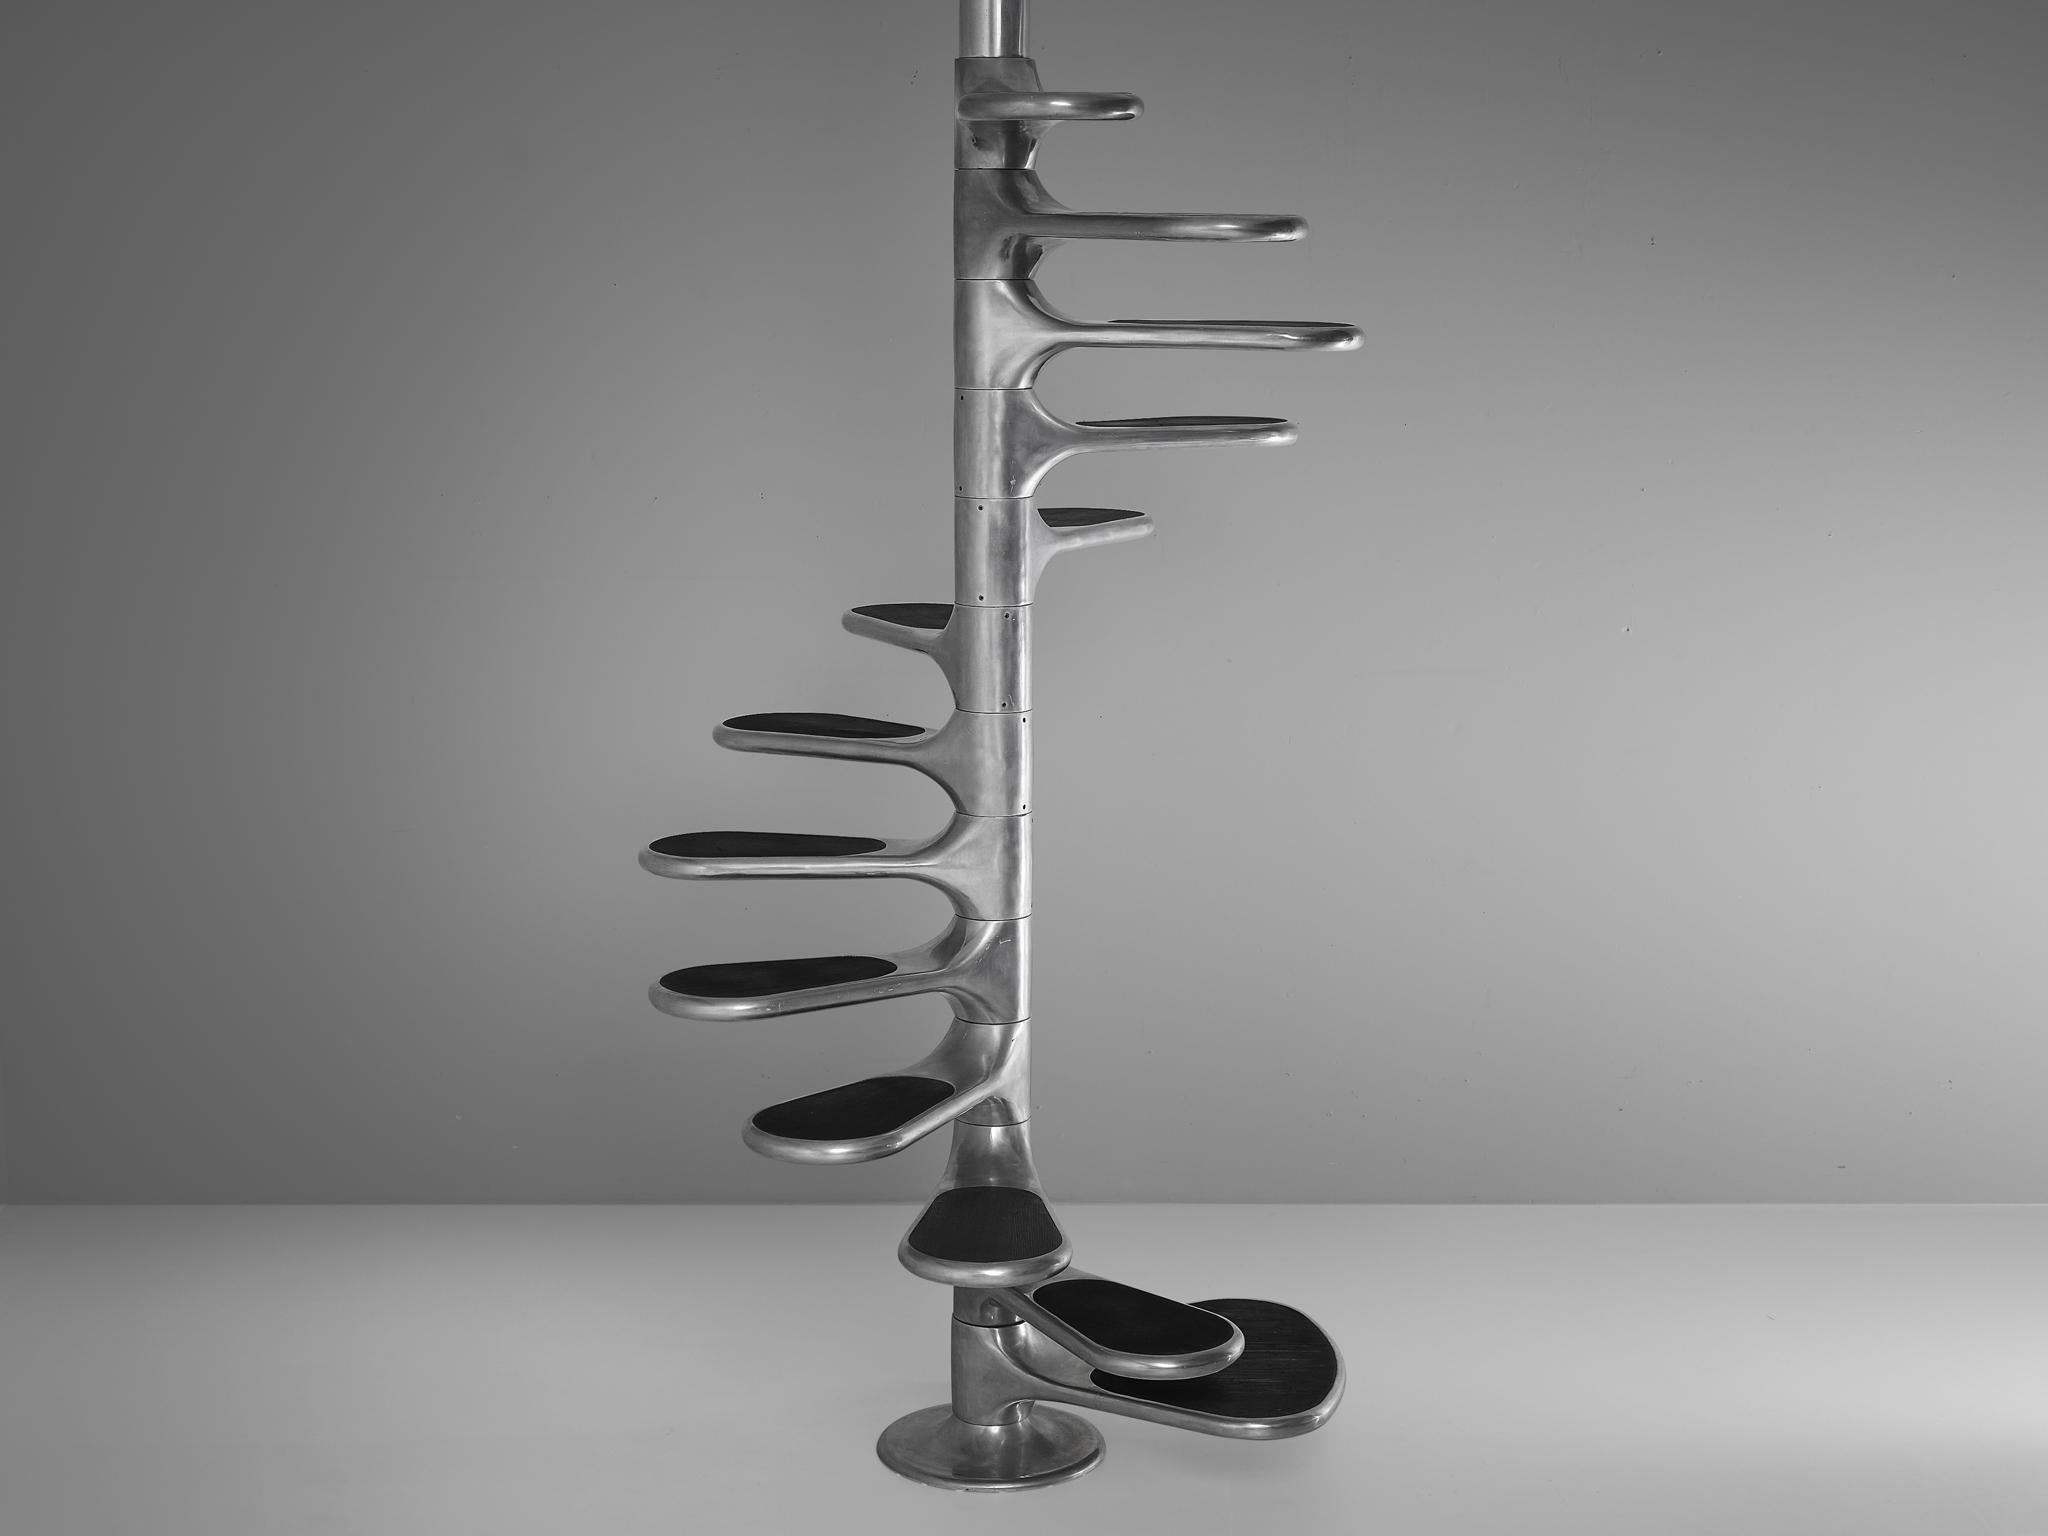 Roger Tallon pour la Galerie LaCloche, escalier 'Helicoid', aluminium, caoutchouc, France, design 1964, production 1960s

Cet escalier remarquable avec une surface de marche en caoutchouc s'appelle l'escalier 